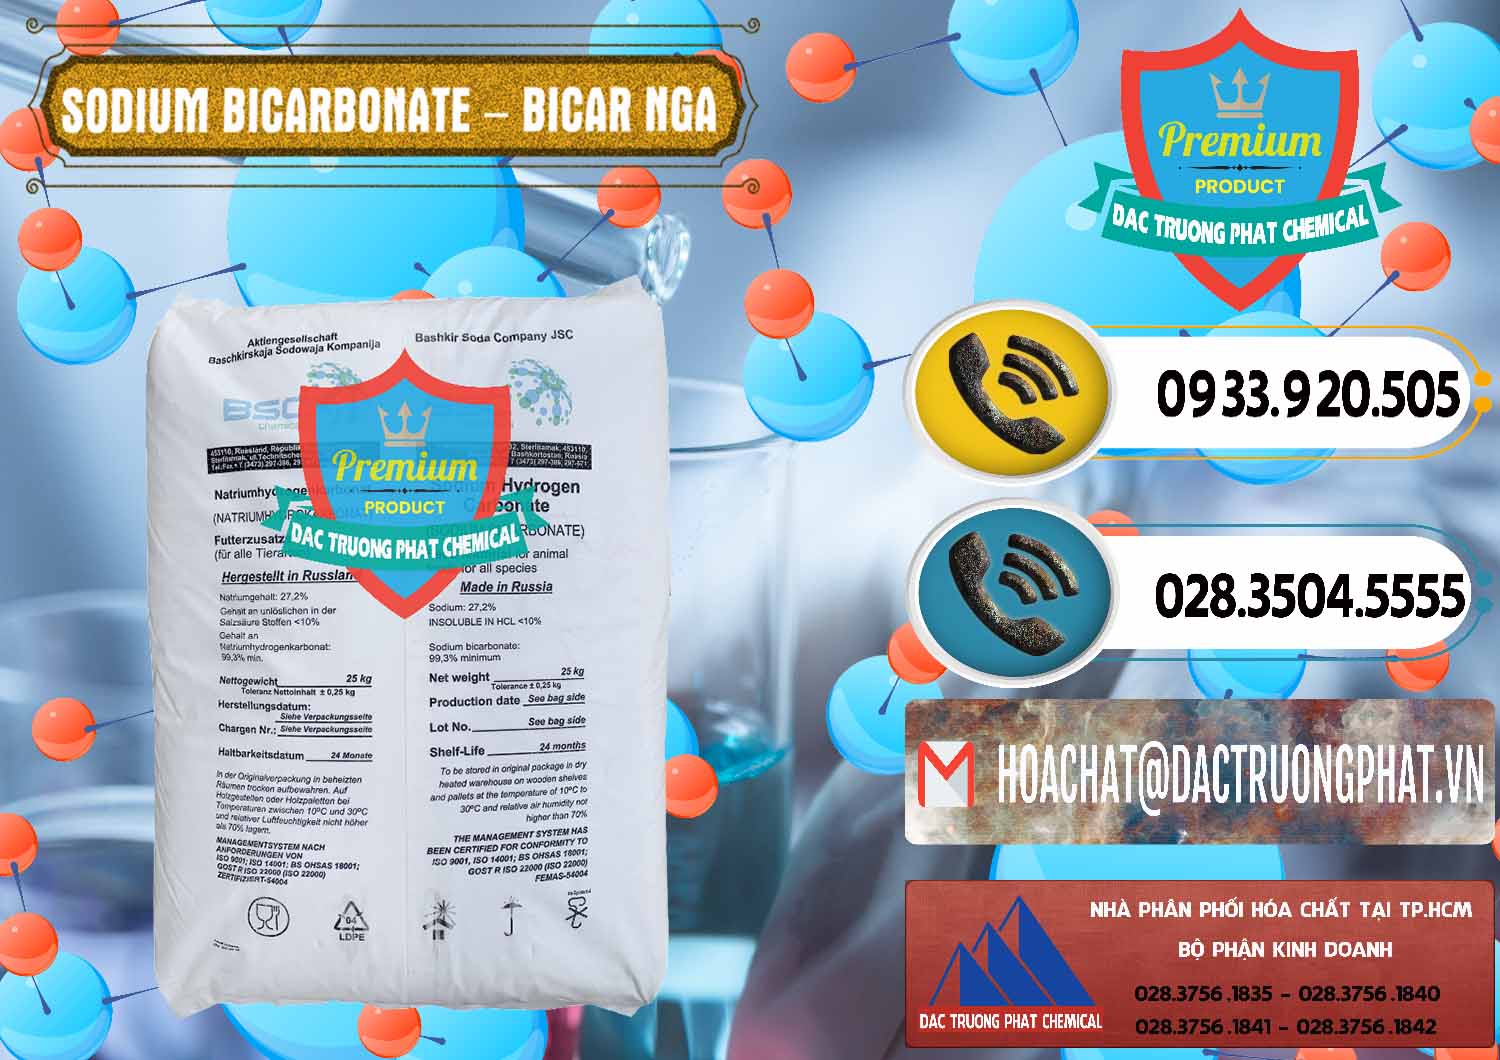 Cty chuyên nhập khẩu ( bán ) Sodium Bicarbonate – Bicar NaHCO3 Nga Russia - 0425 - Cty phân phối ( bán ) hóa chất tại TP.HCM - hoachatdetnhuom.vn